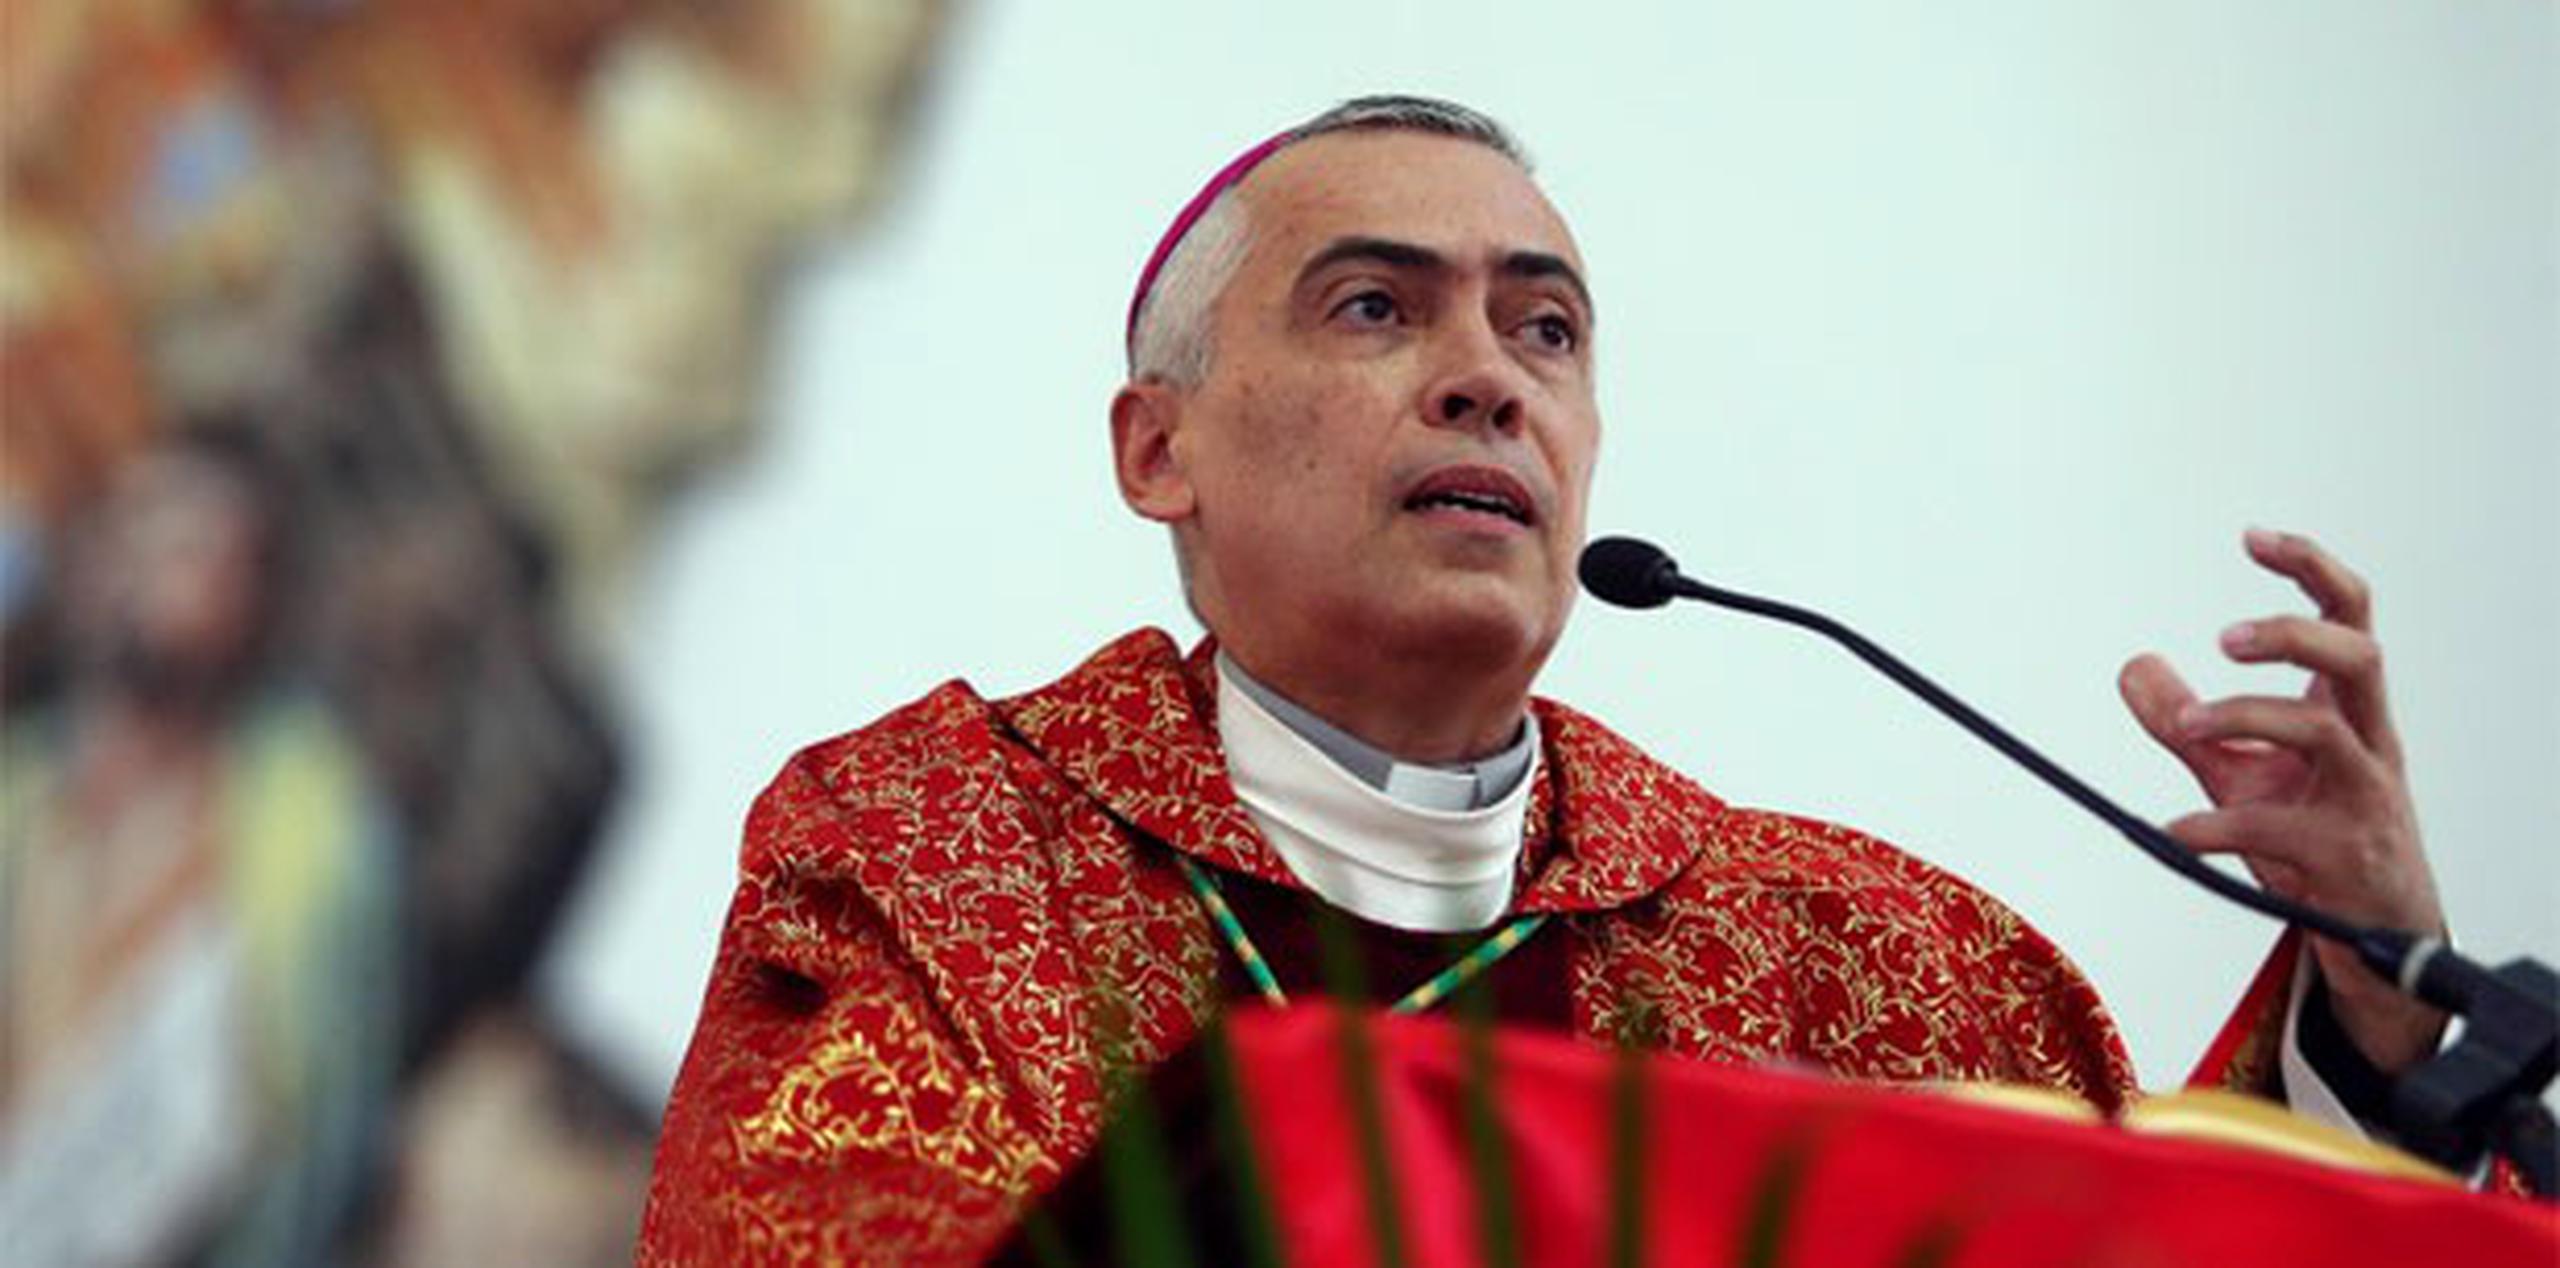 Daniel Fernández Torres señaló que la determinación del Supremo permitirá que los católicos sigan confiando en la confesión. (Archivo)